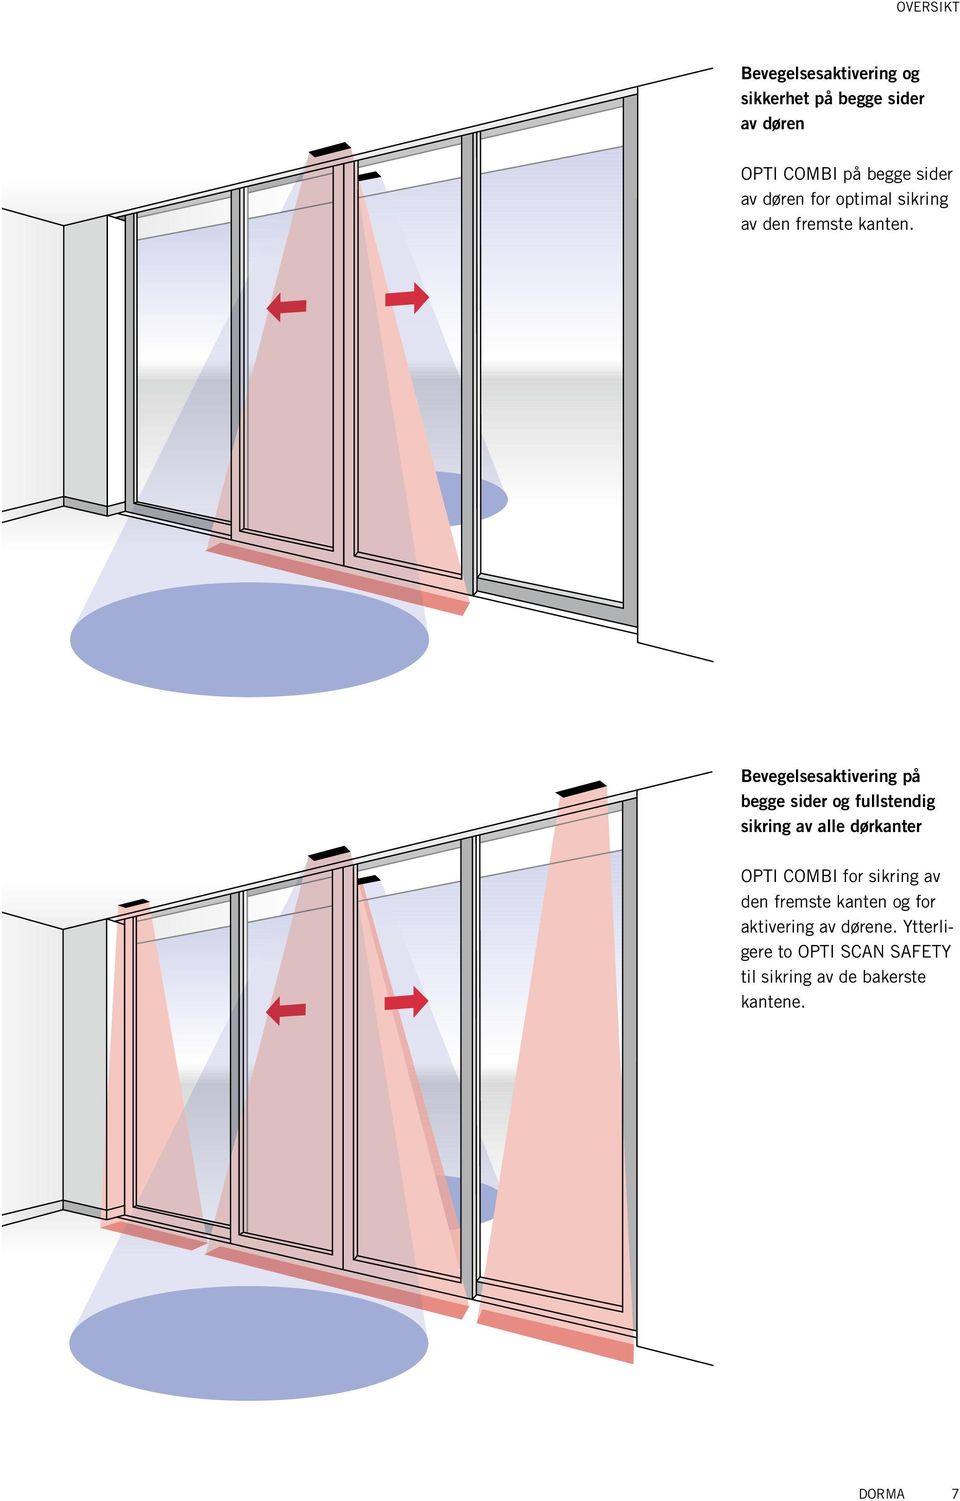 Bevegelsesaktivering på begge sider og fullstendig sikring av alle dørkanter OPTI COMBI for